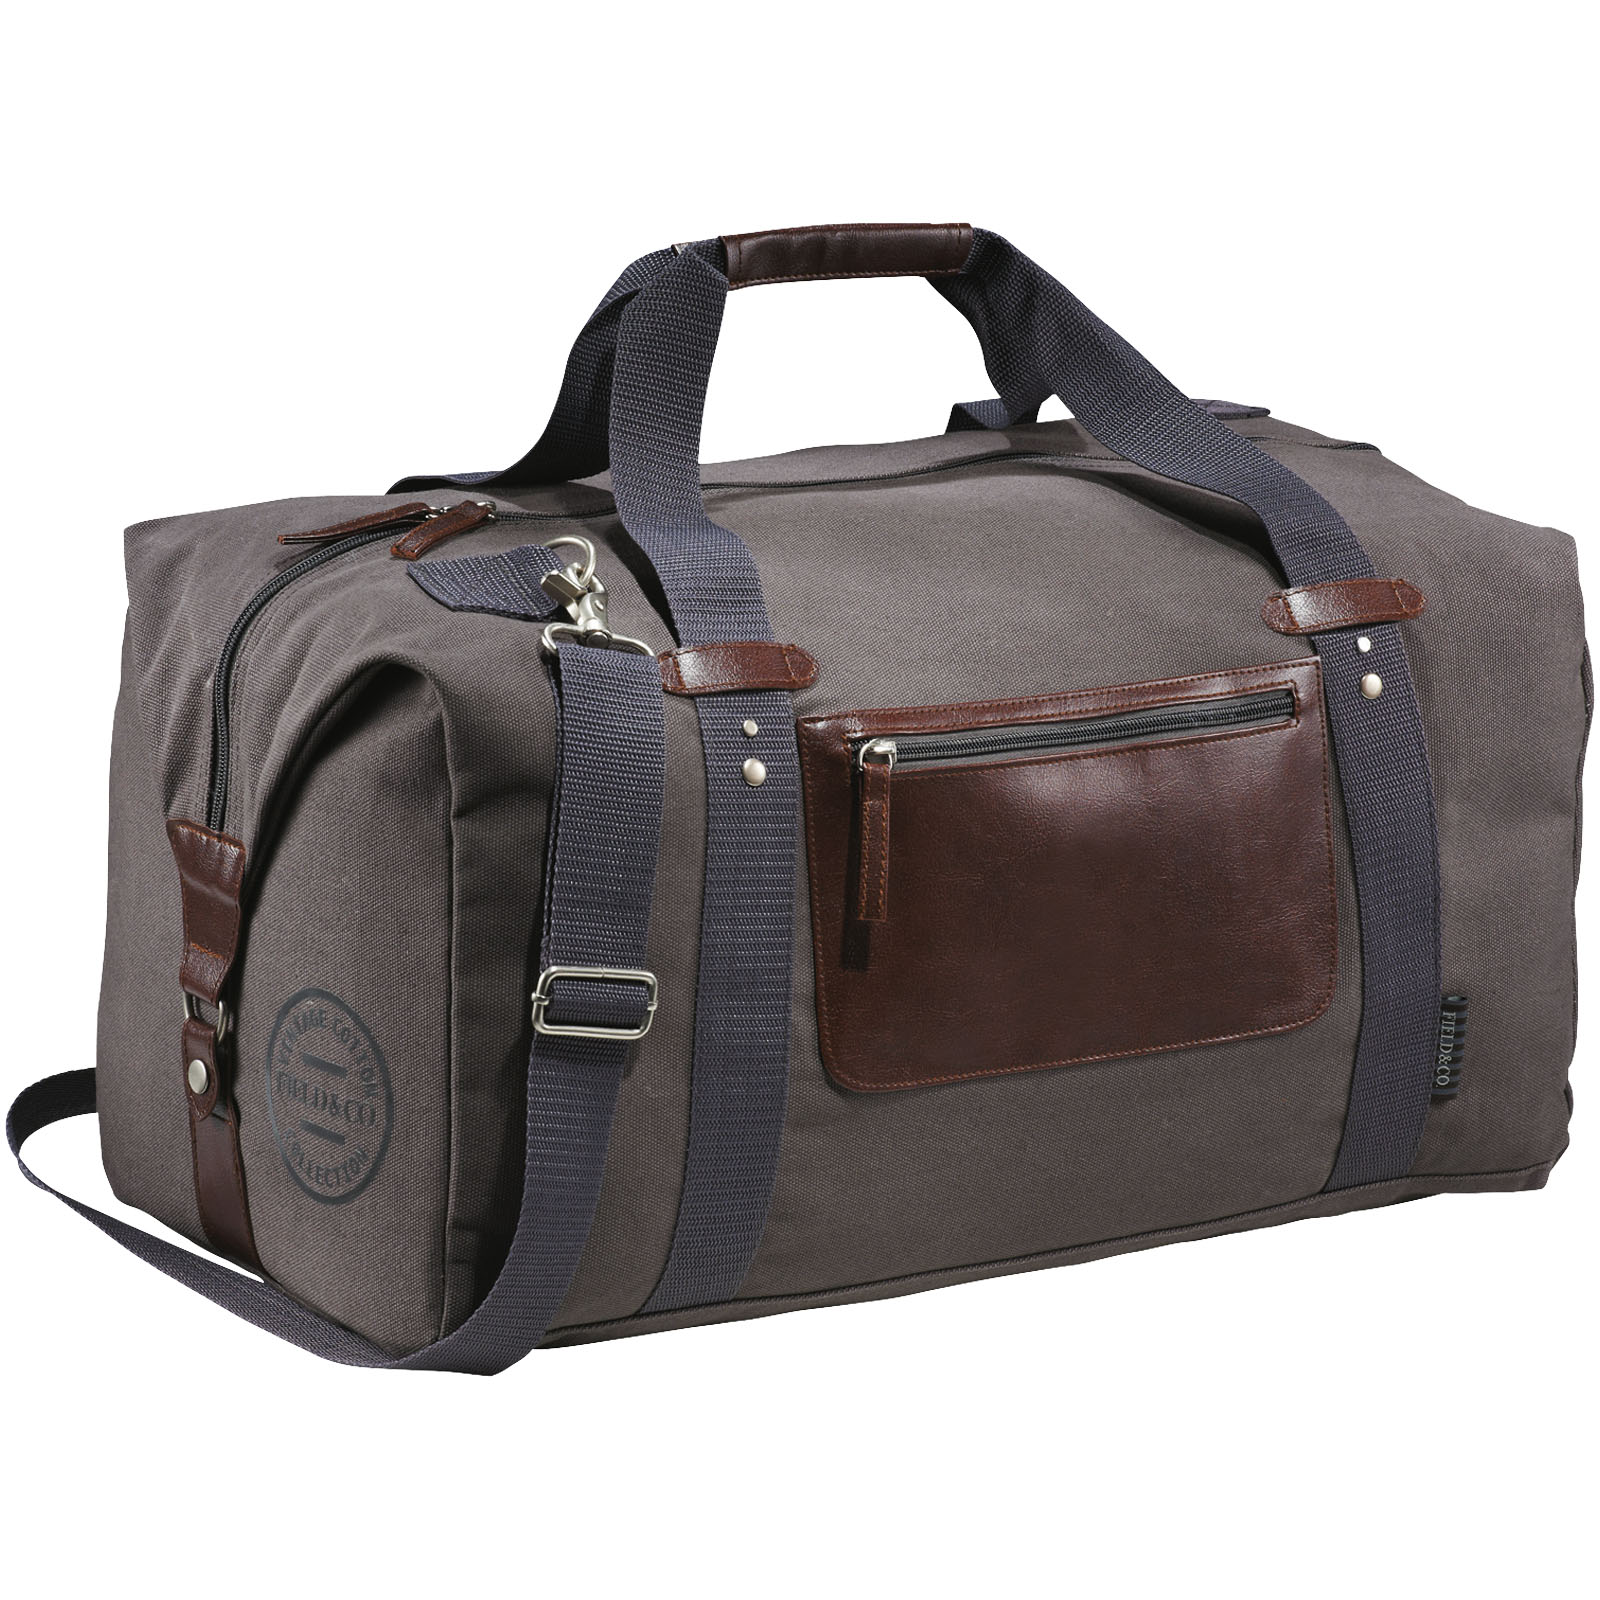 Advertising Travel bags - Classic duffel bag 37L